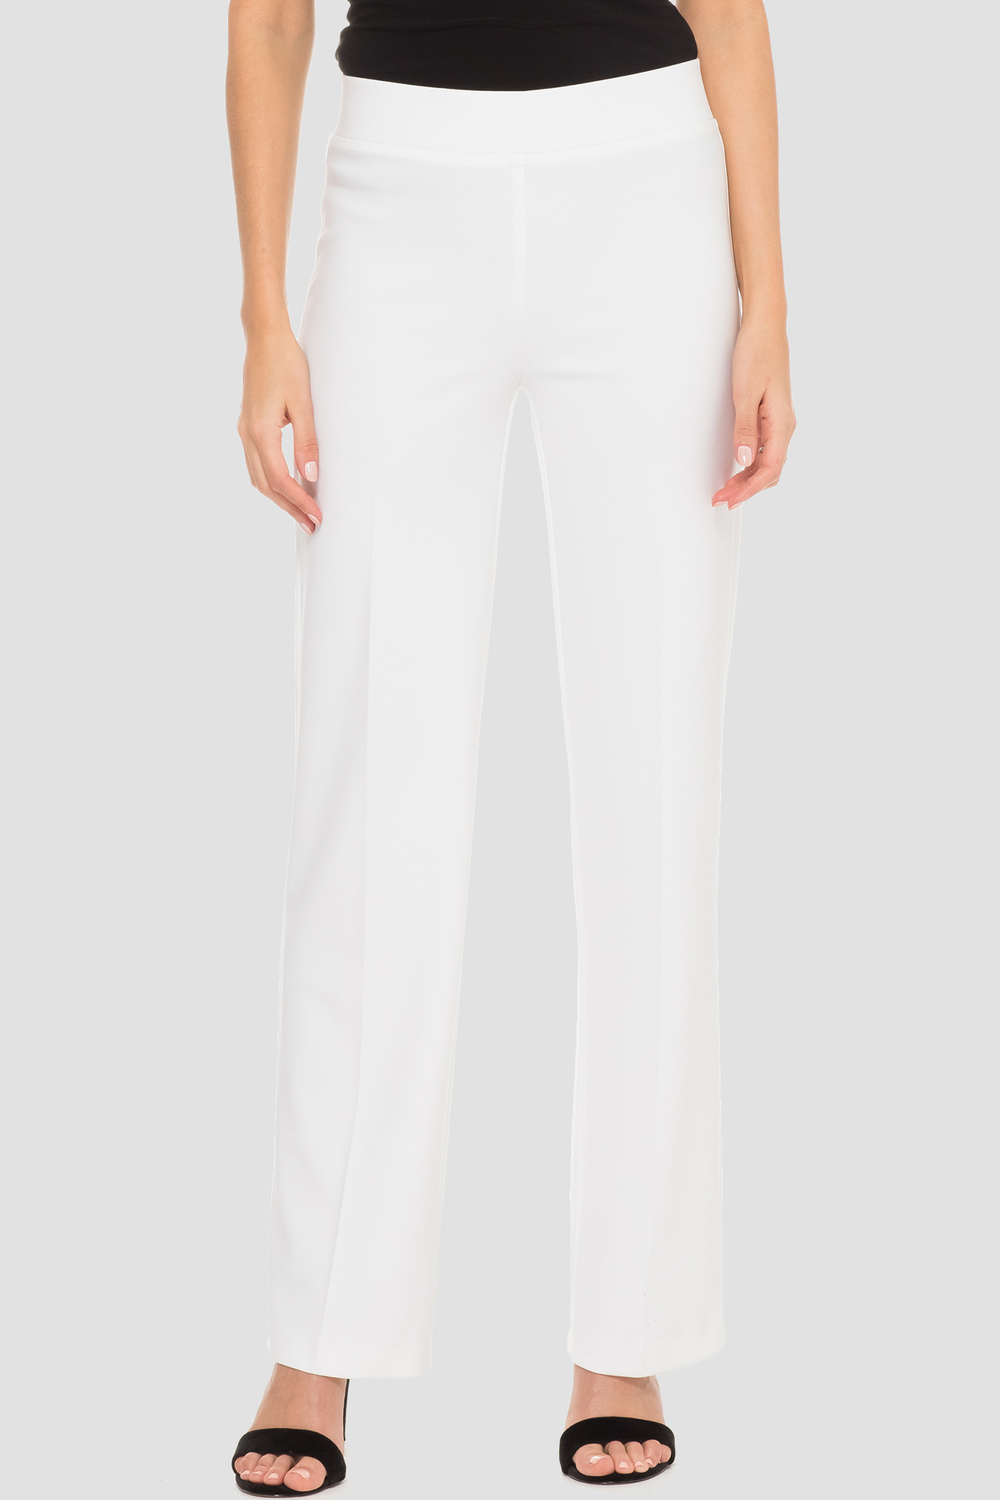 Pantalon droit, plis marqués Modèle 153088S24. Blanc